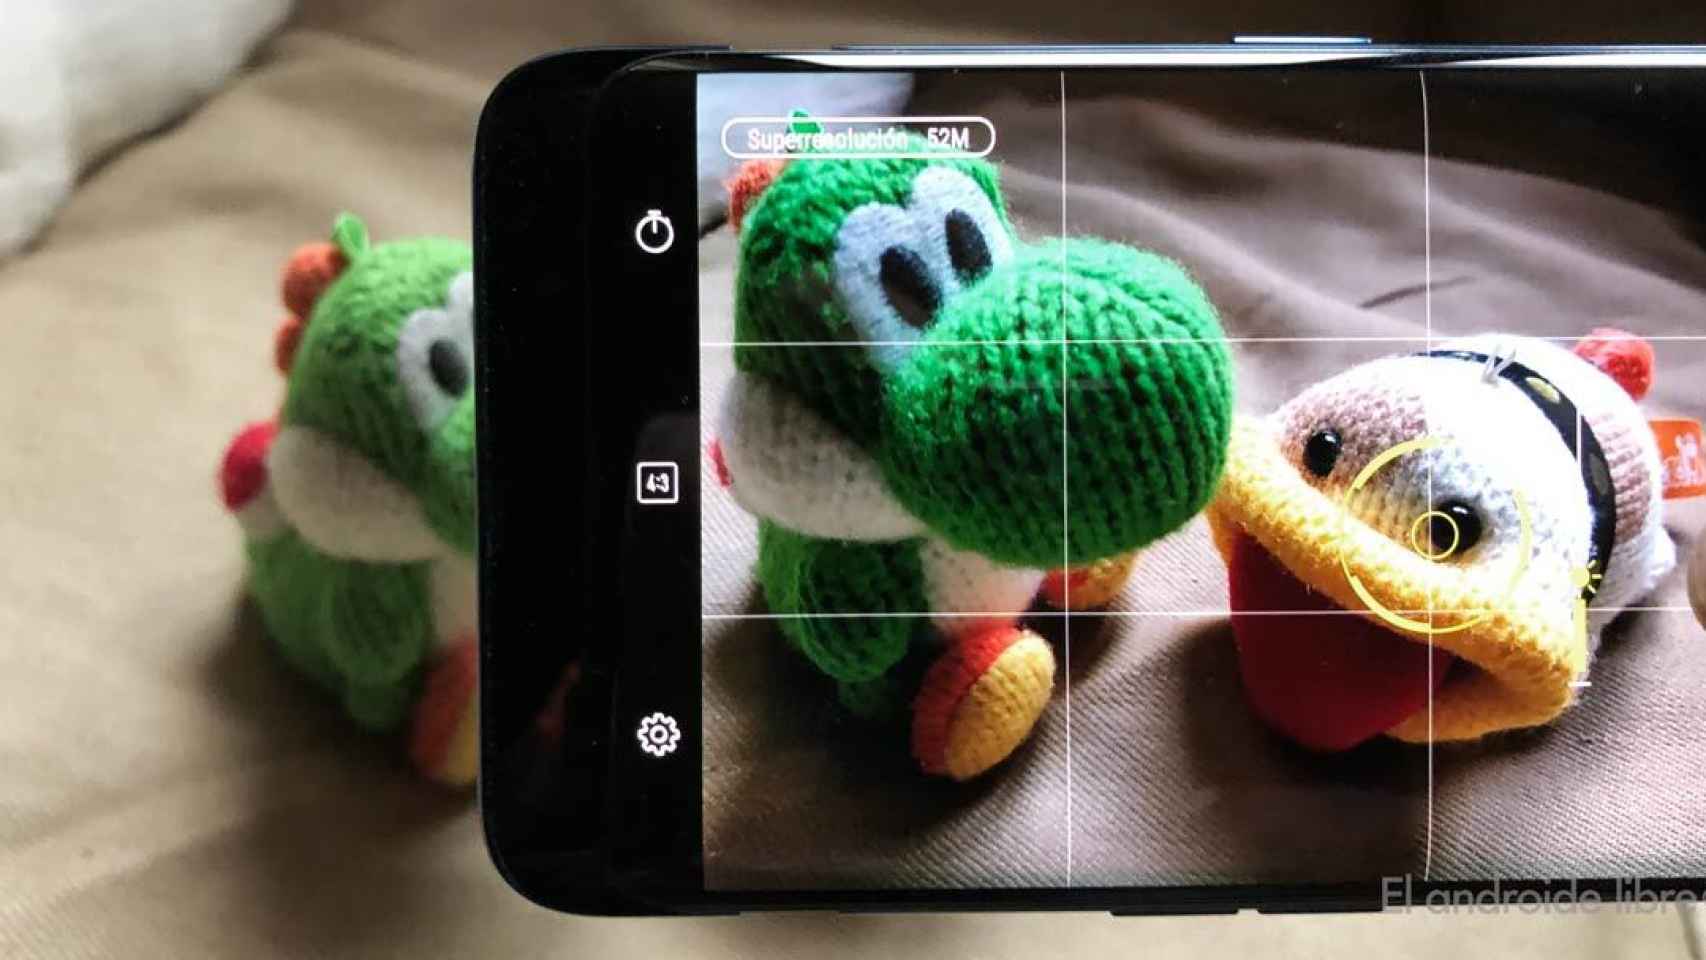 La excelente cámara de Asus en tu móvil Android: fotos de hasta 52 Mpx